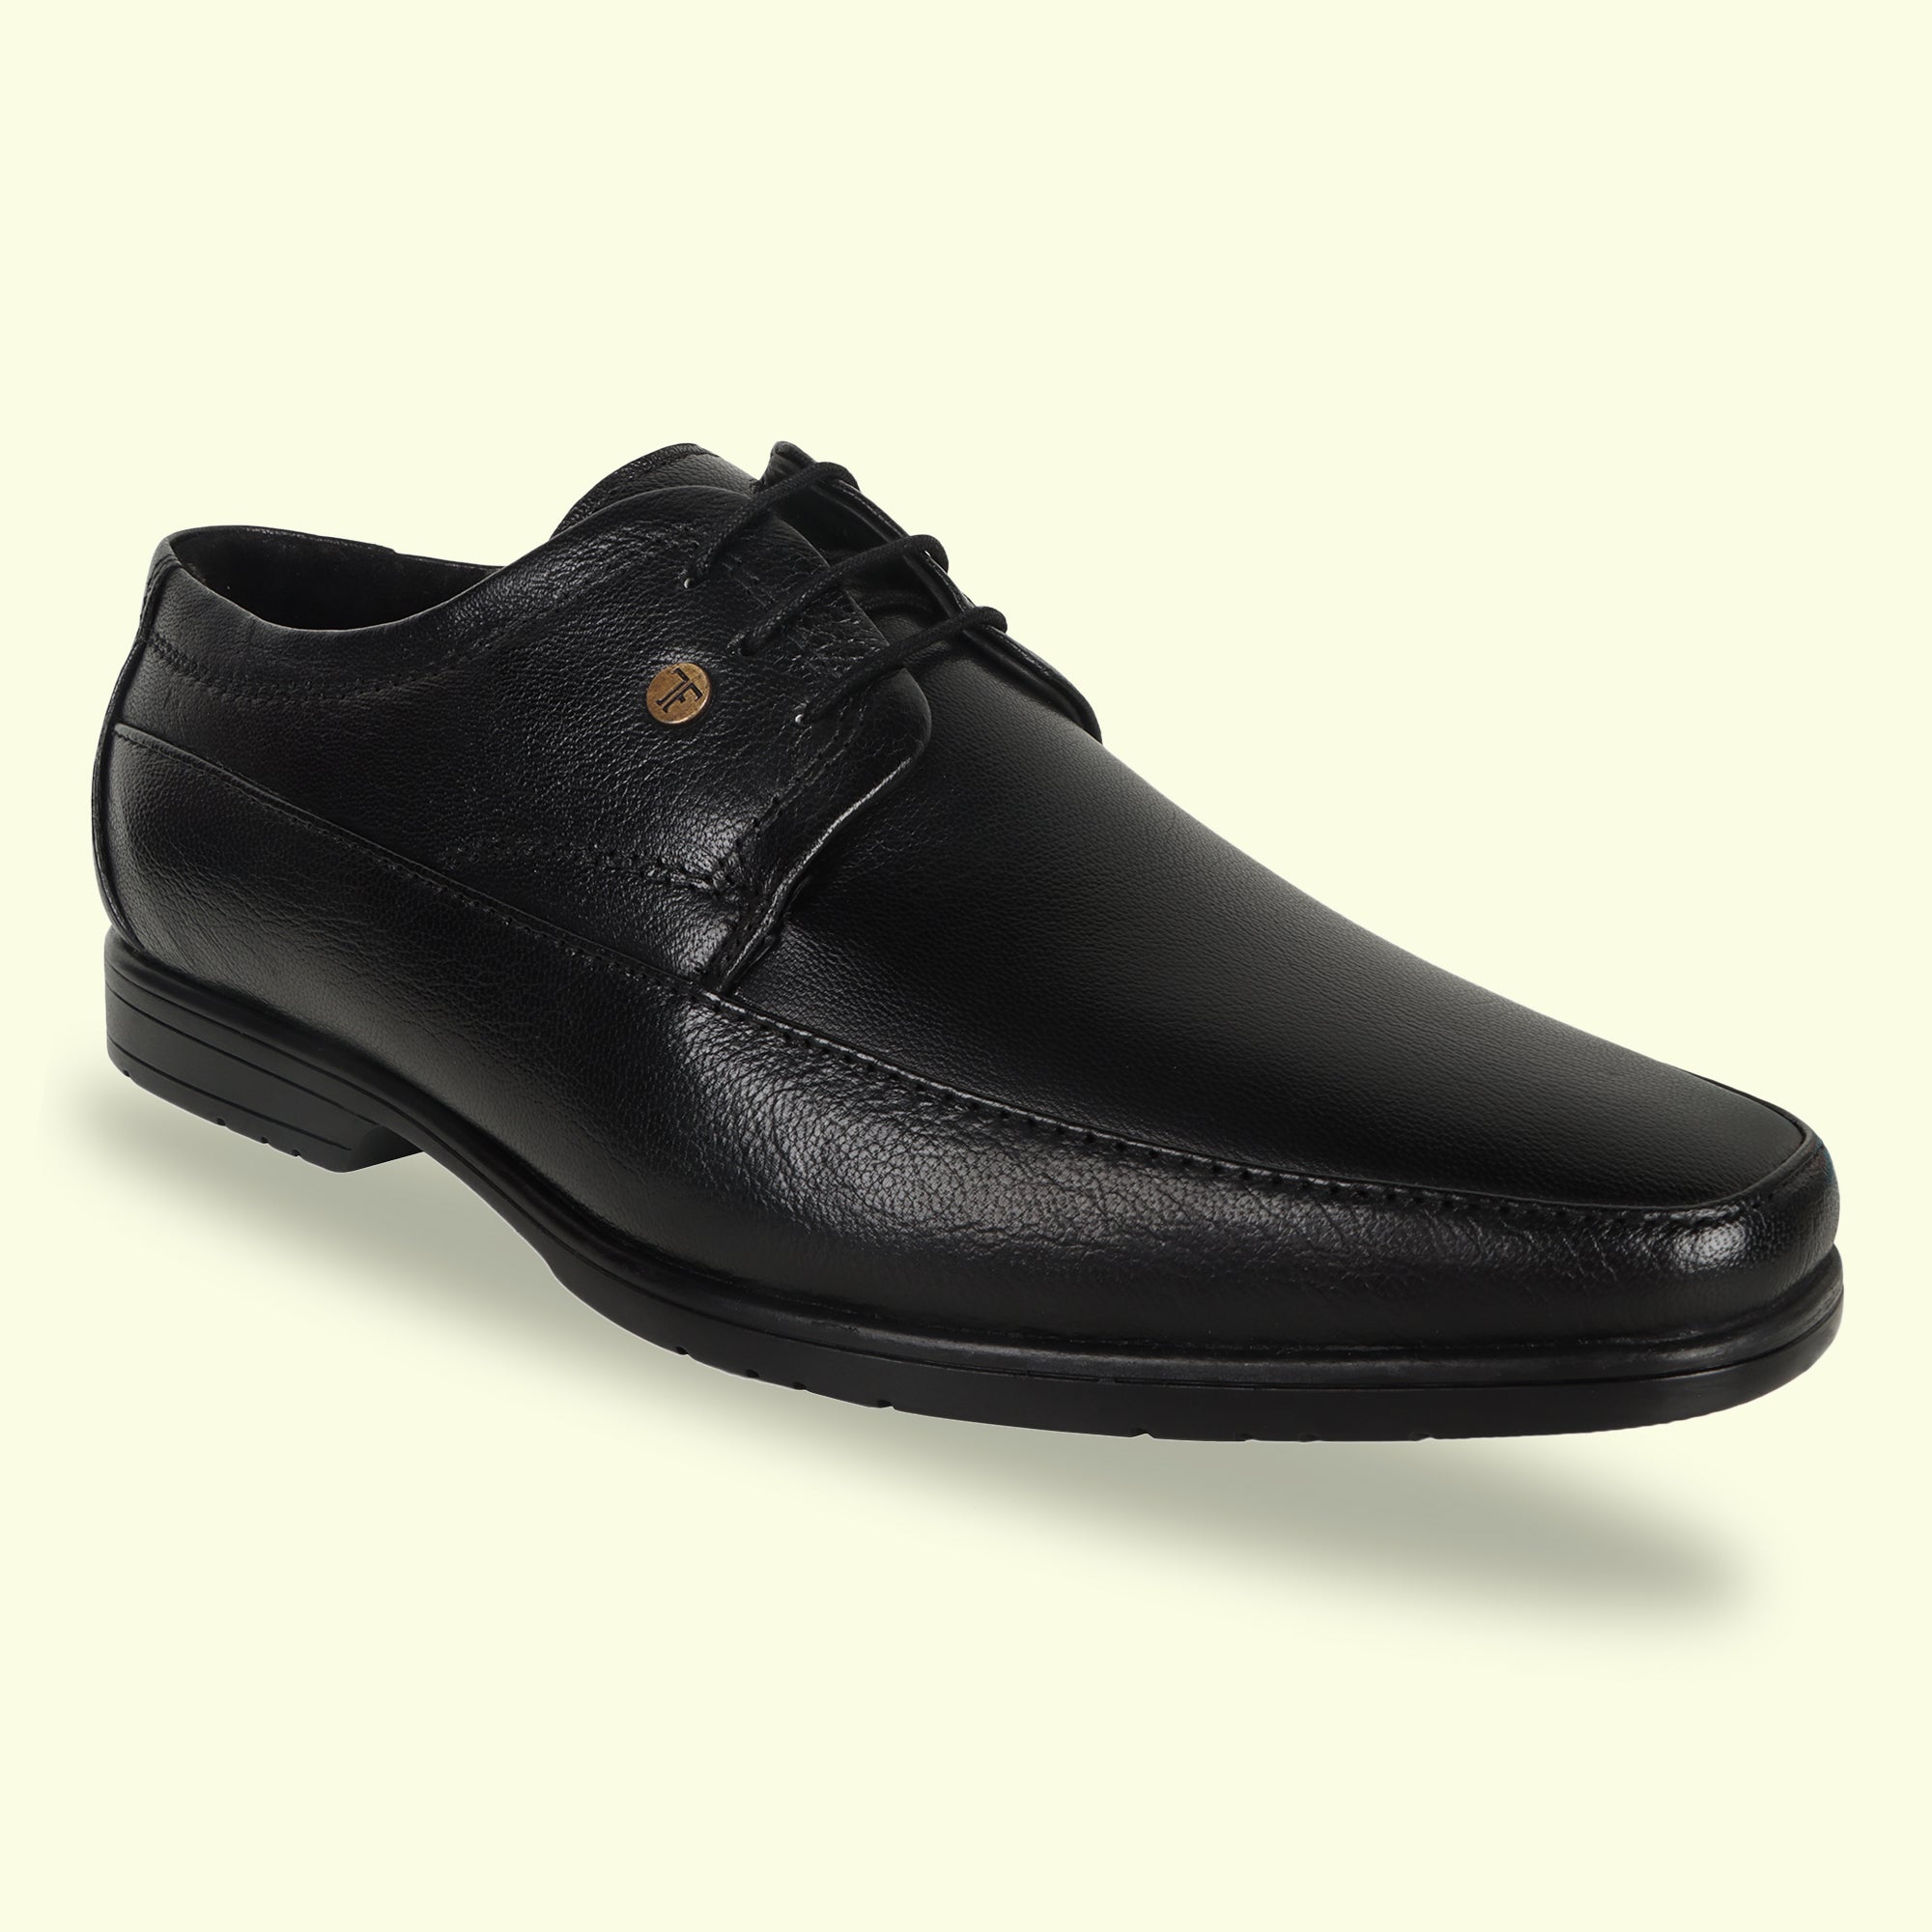 TRUDGE Black Formal Shoe For Men - 5029